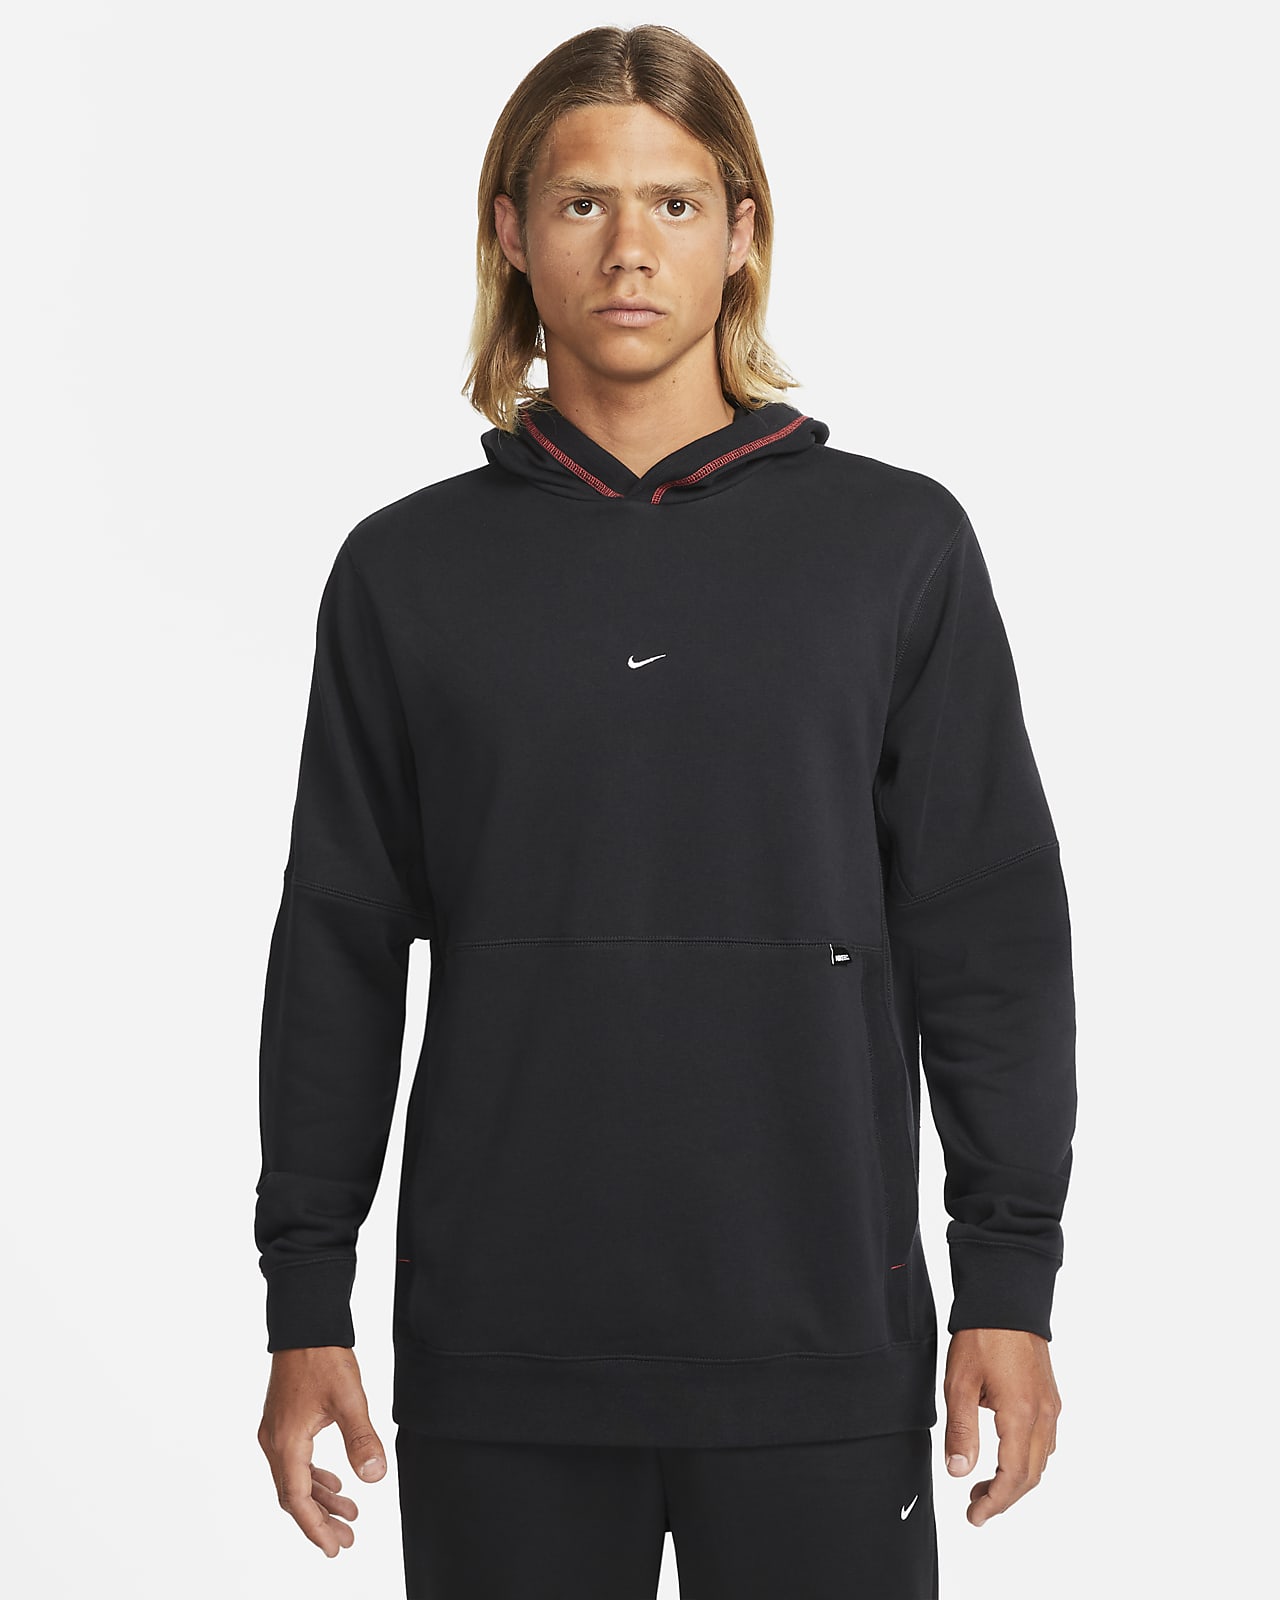 Ficticio hacer los deberes inoxidable Sudadera con gorro de fútbol de tejido Fleece para hombre Nike. Nike.com